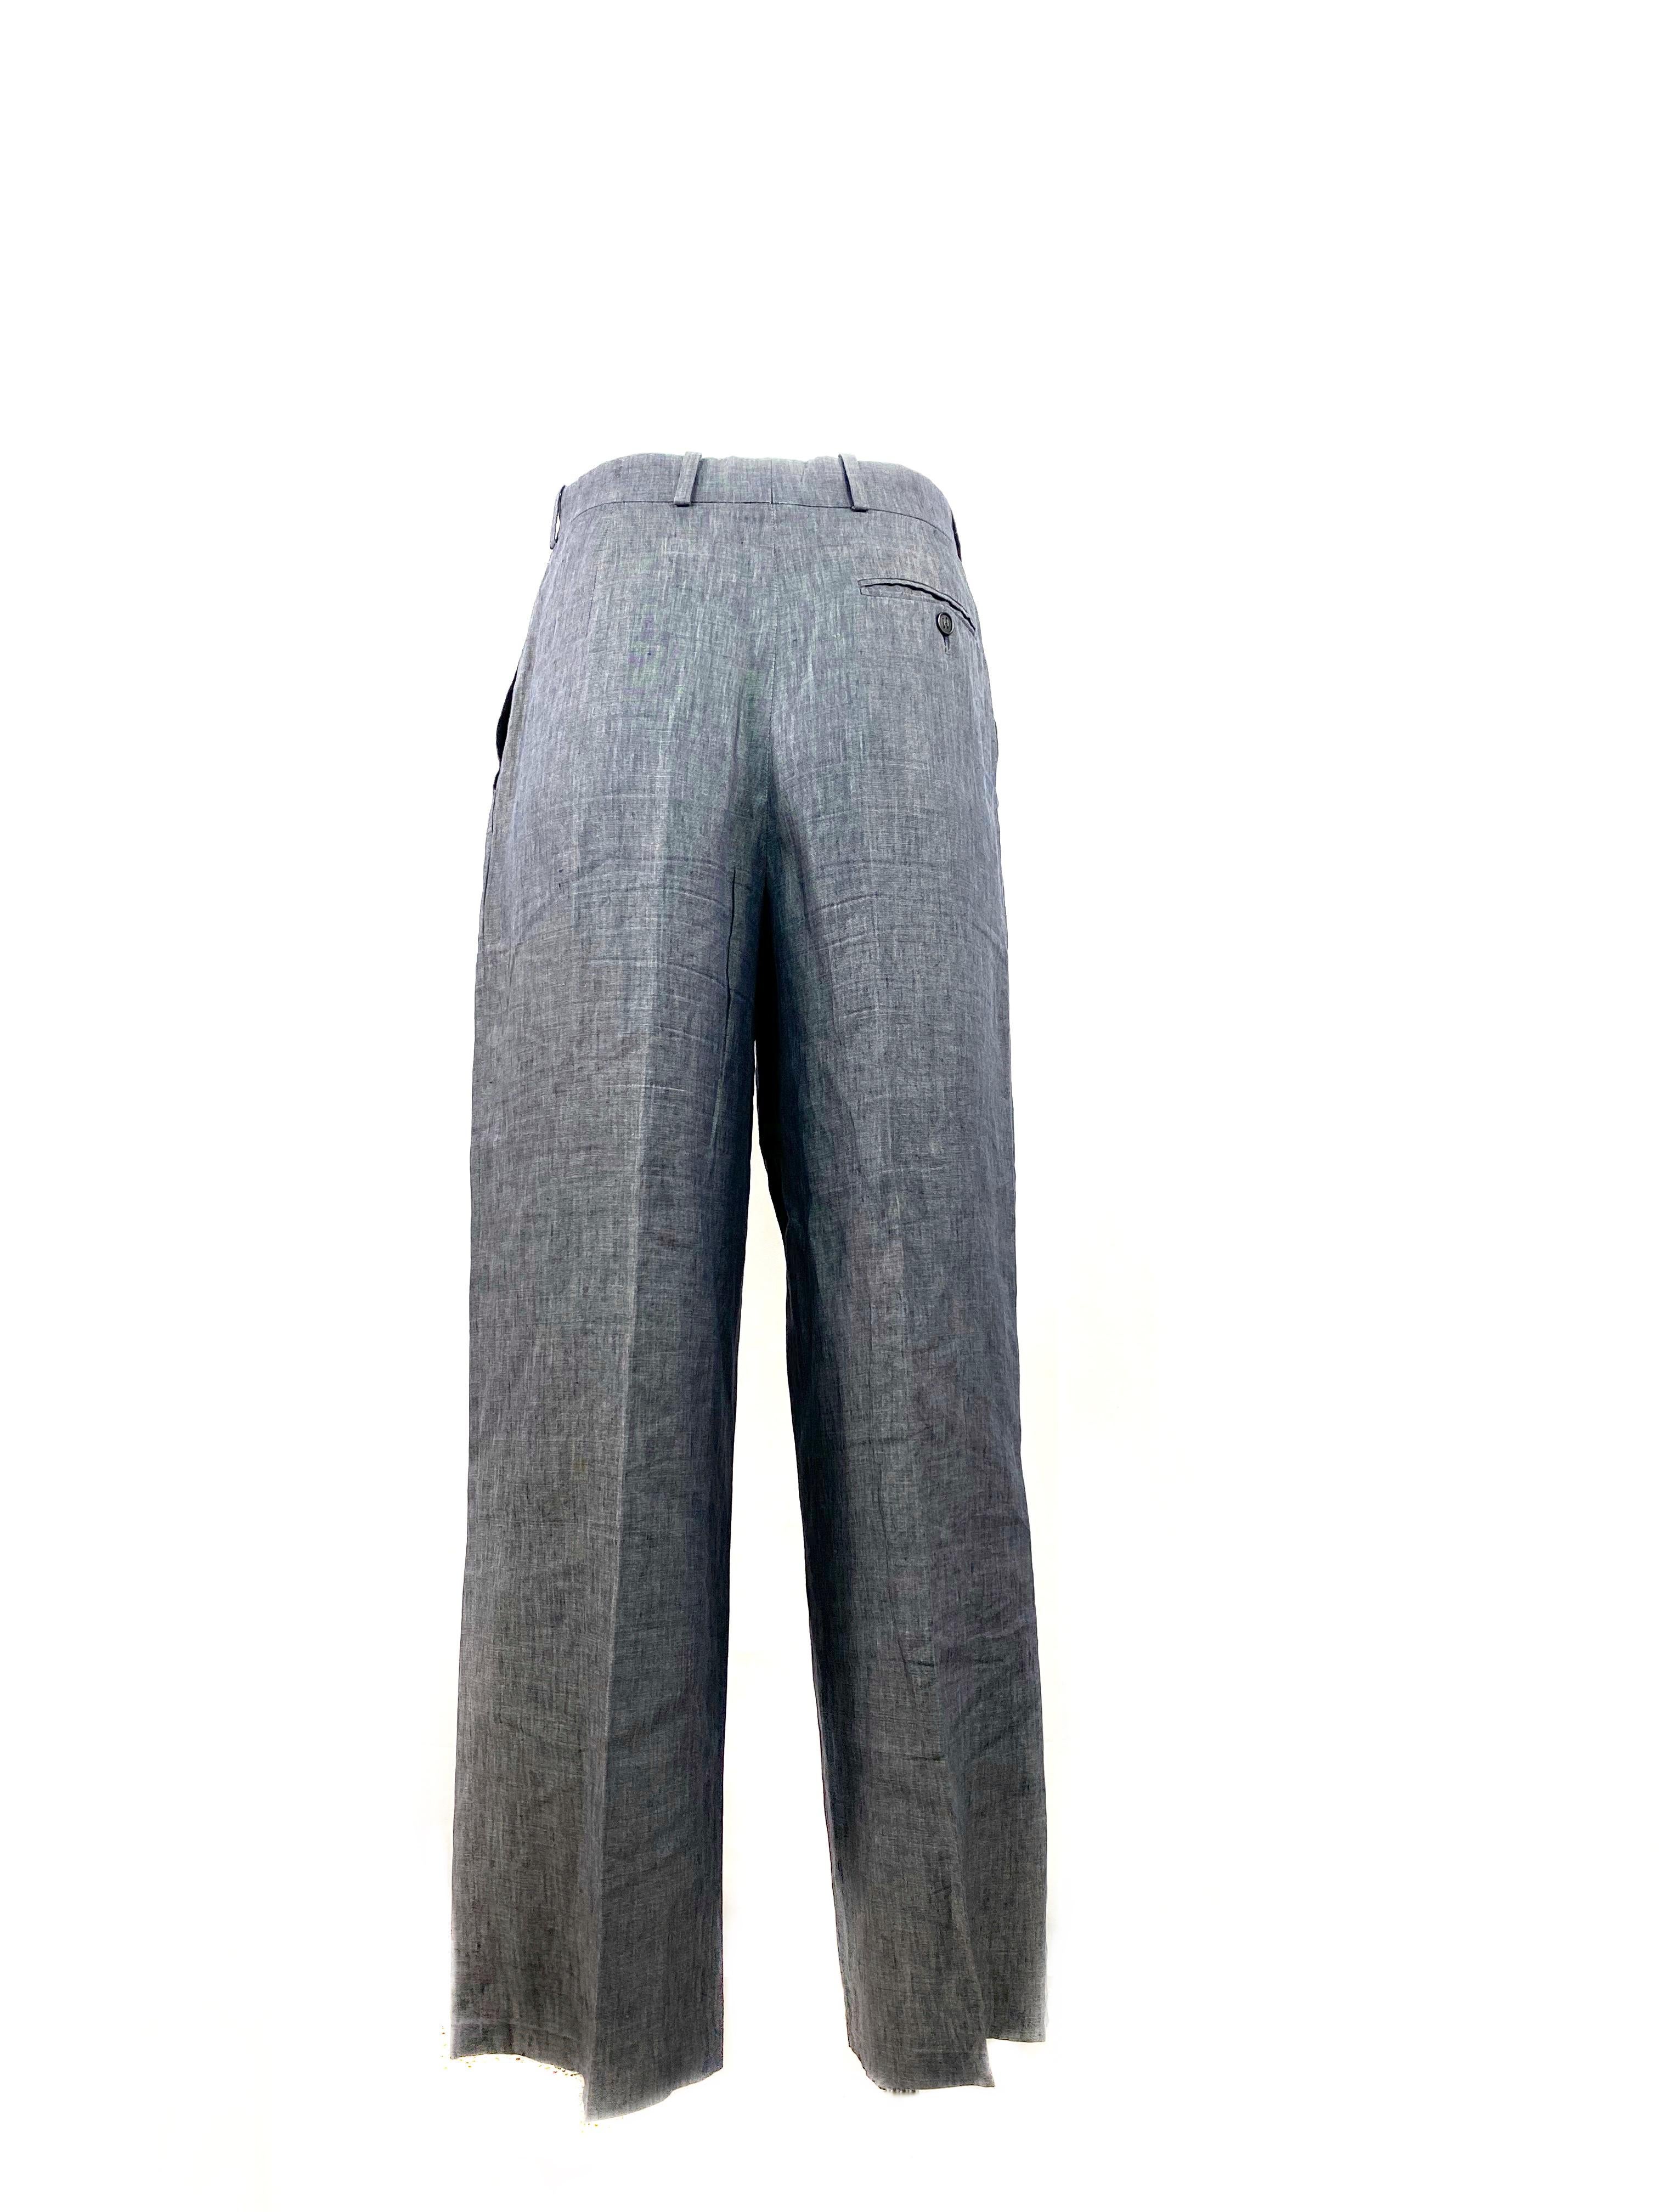 Women's or Men's HERMES Paris Blue Linen Straight Trousers Pants Size 38 For Sale